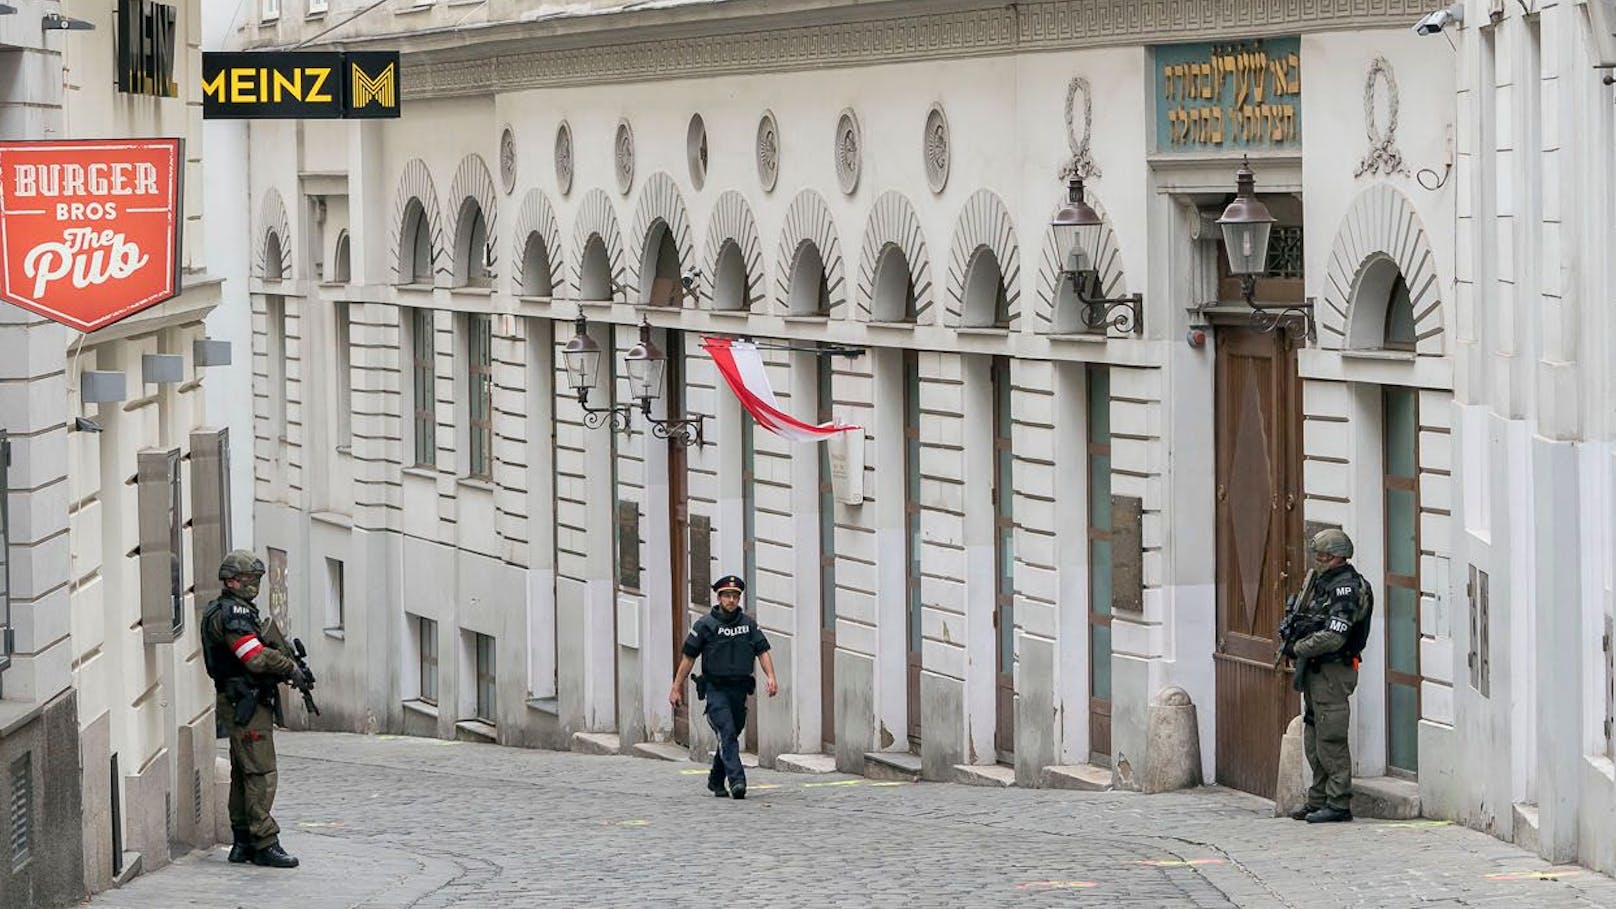 Angriff auf Synagoge – Wiens Polizei ließ sie unbewacht